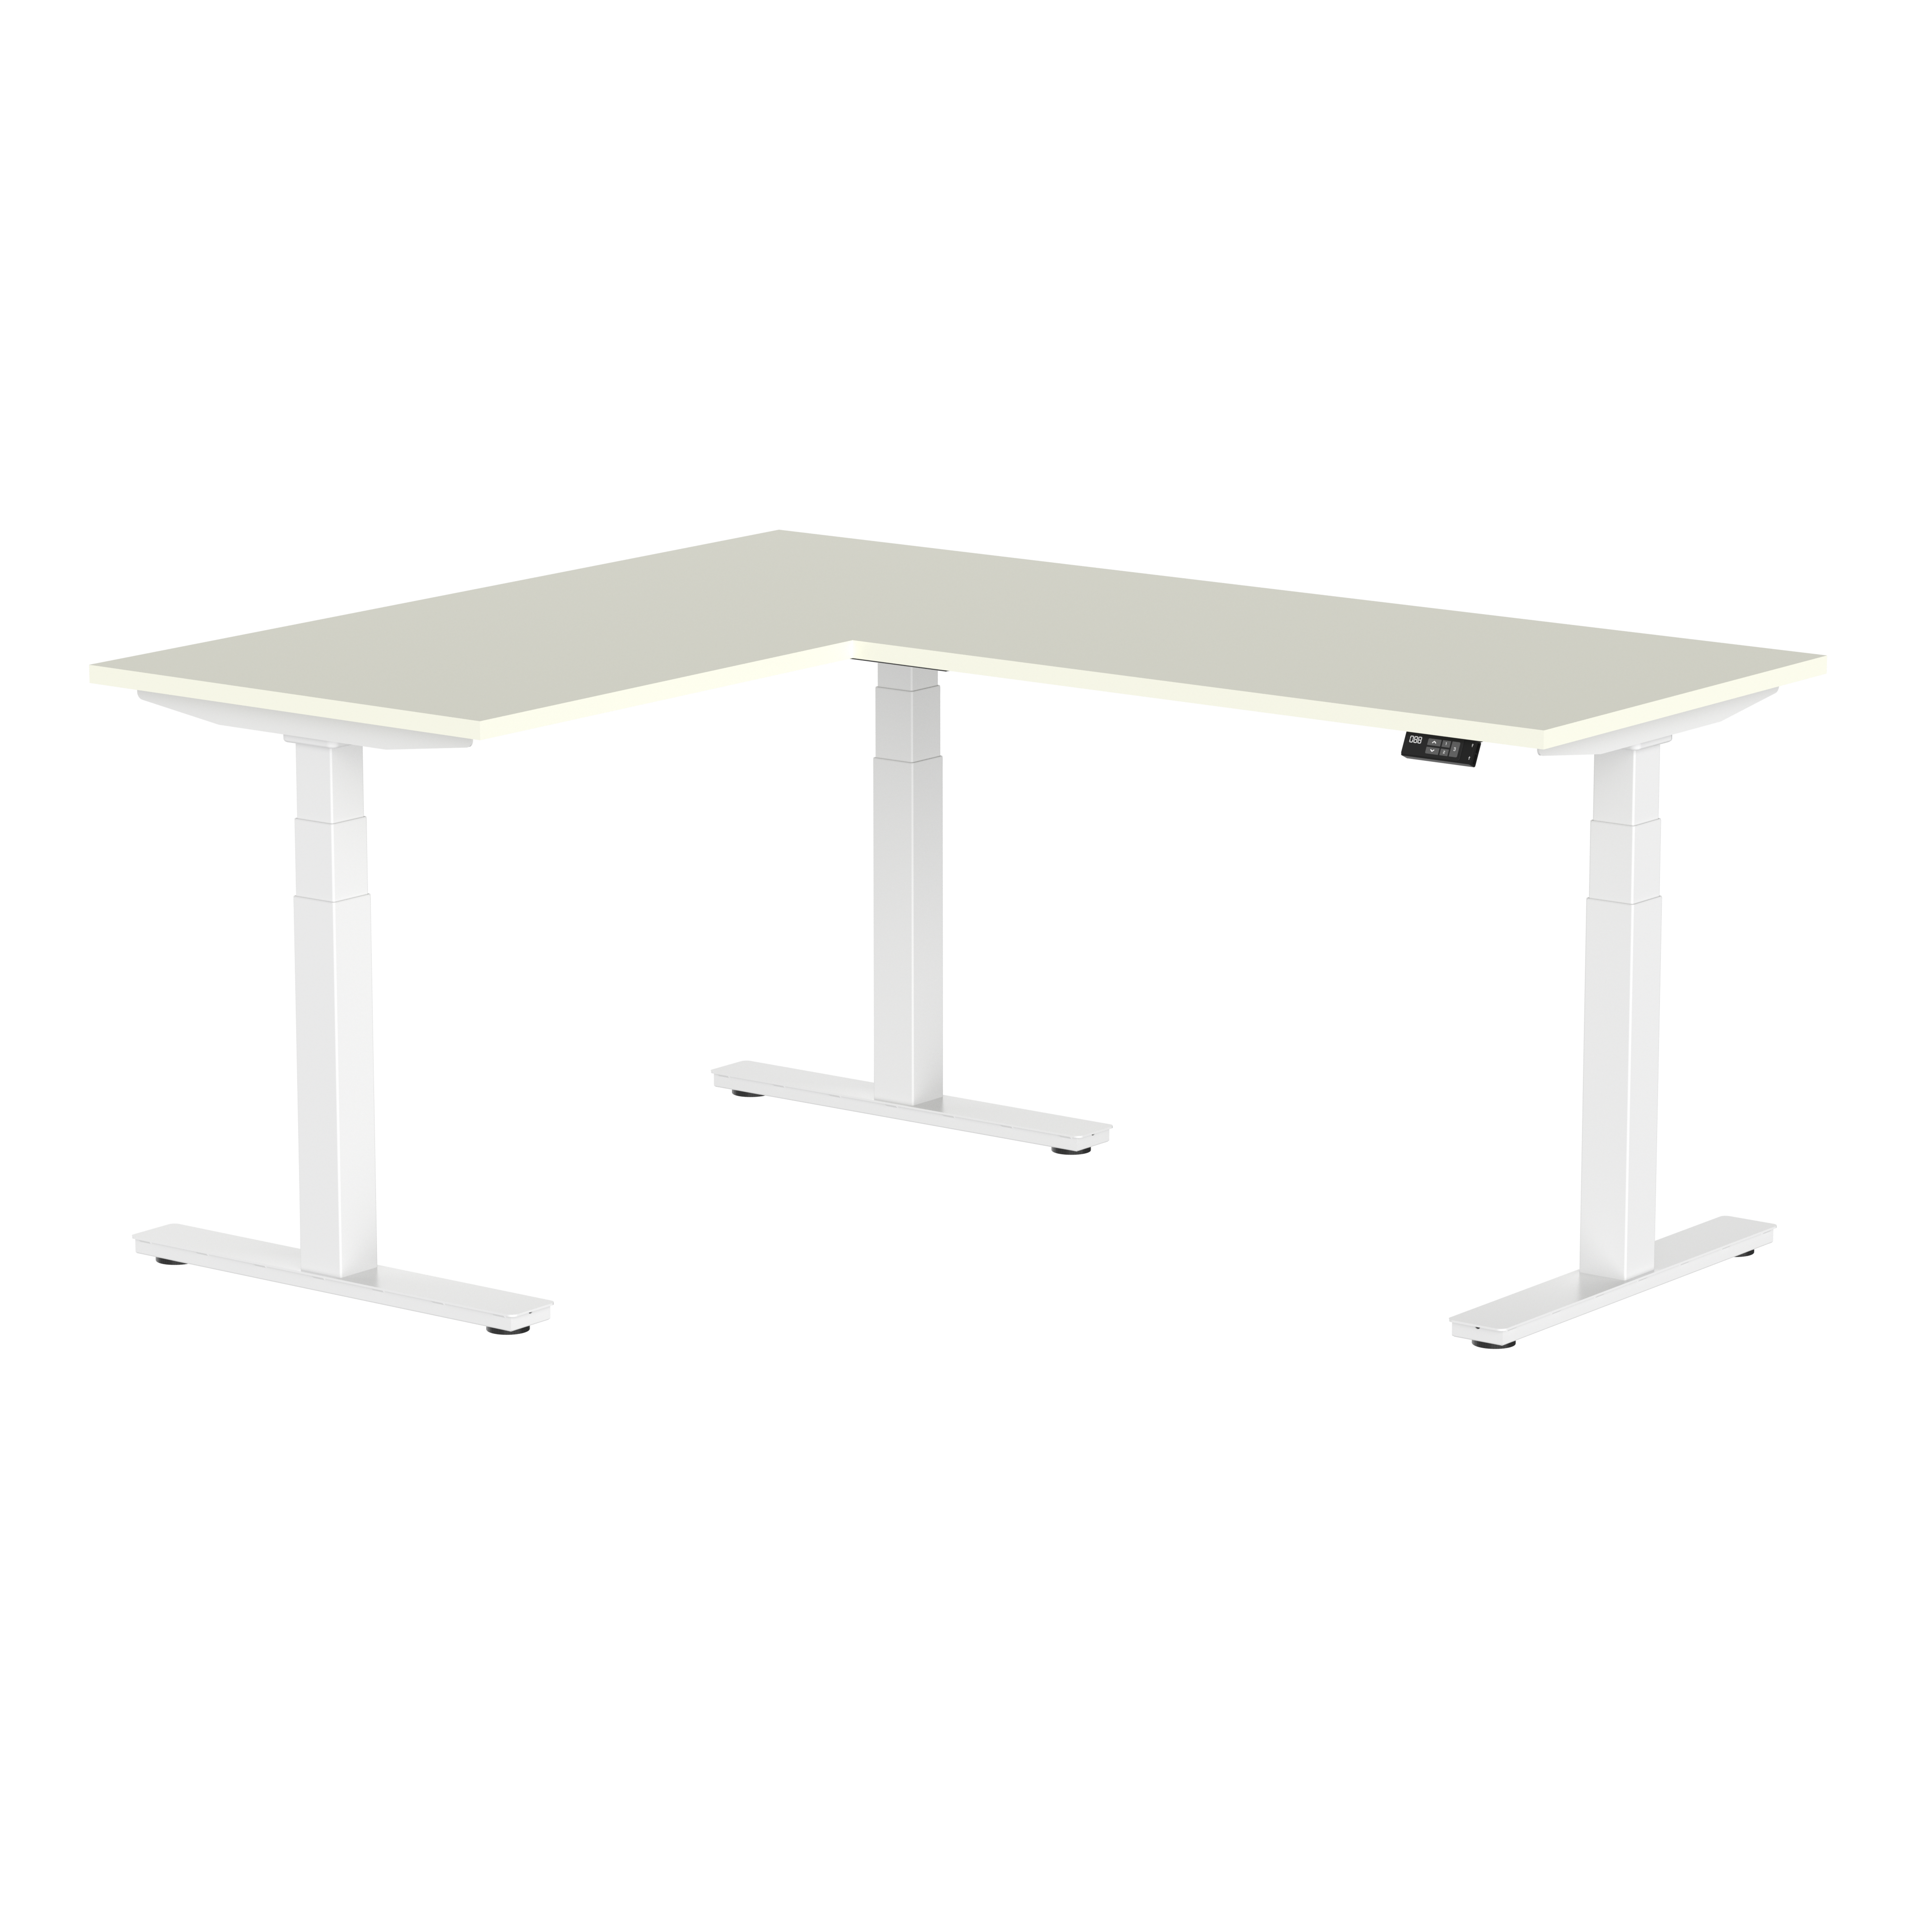 Aoke adjustable height l shaped desk frame